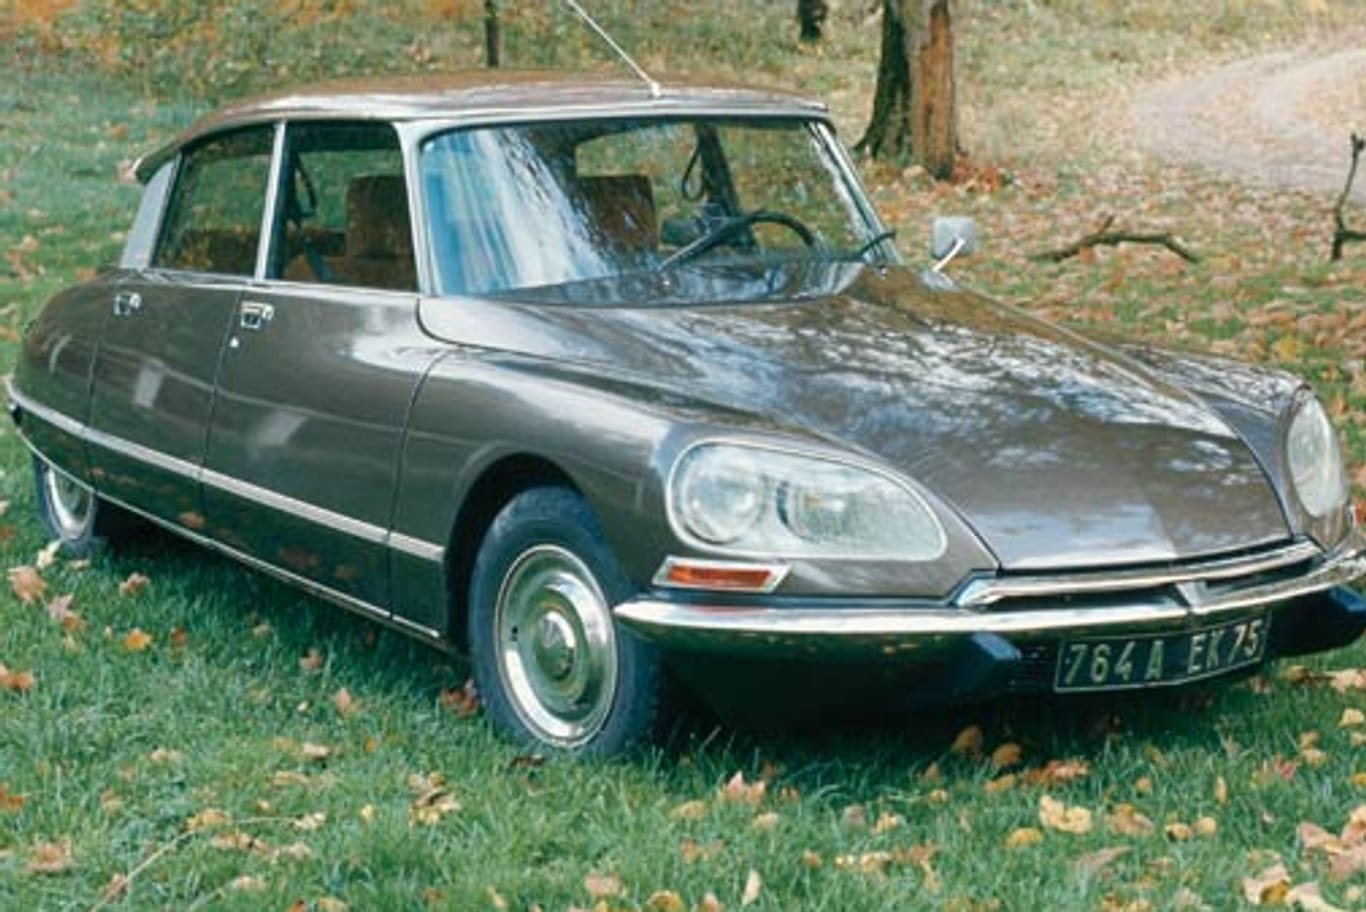 1955 - Citroen DS: Die DS war ein Oberklassemodell des französischen Autobauers Citroen, die bis 1975 produziert wurde. Technisch gesehen war sie ihrer Zeit weit voraus, da sie u.a. hydropneumatische Federung, Kurvenlicht und Niveauregulierung verfügte. Sie wird auch, abgeleitet vom französischen "la déesse", die Göttin genannt. (